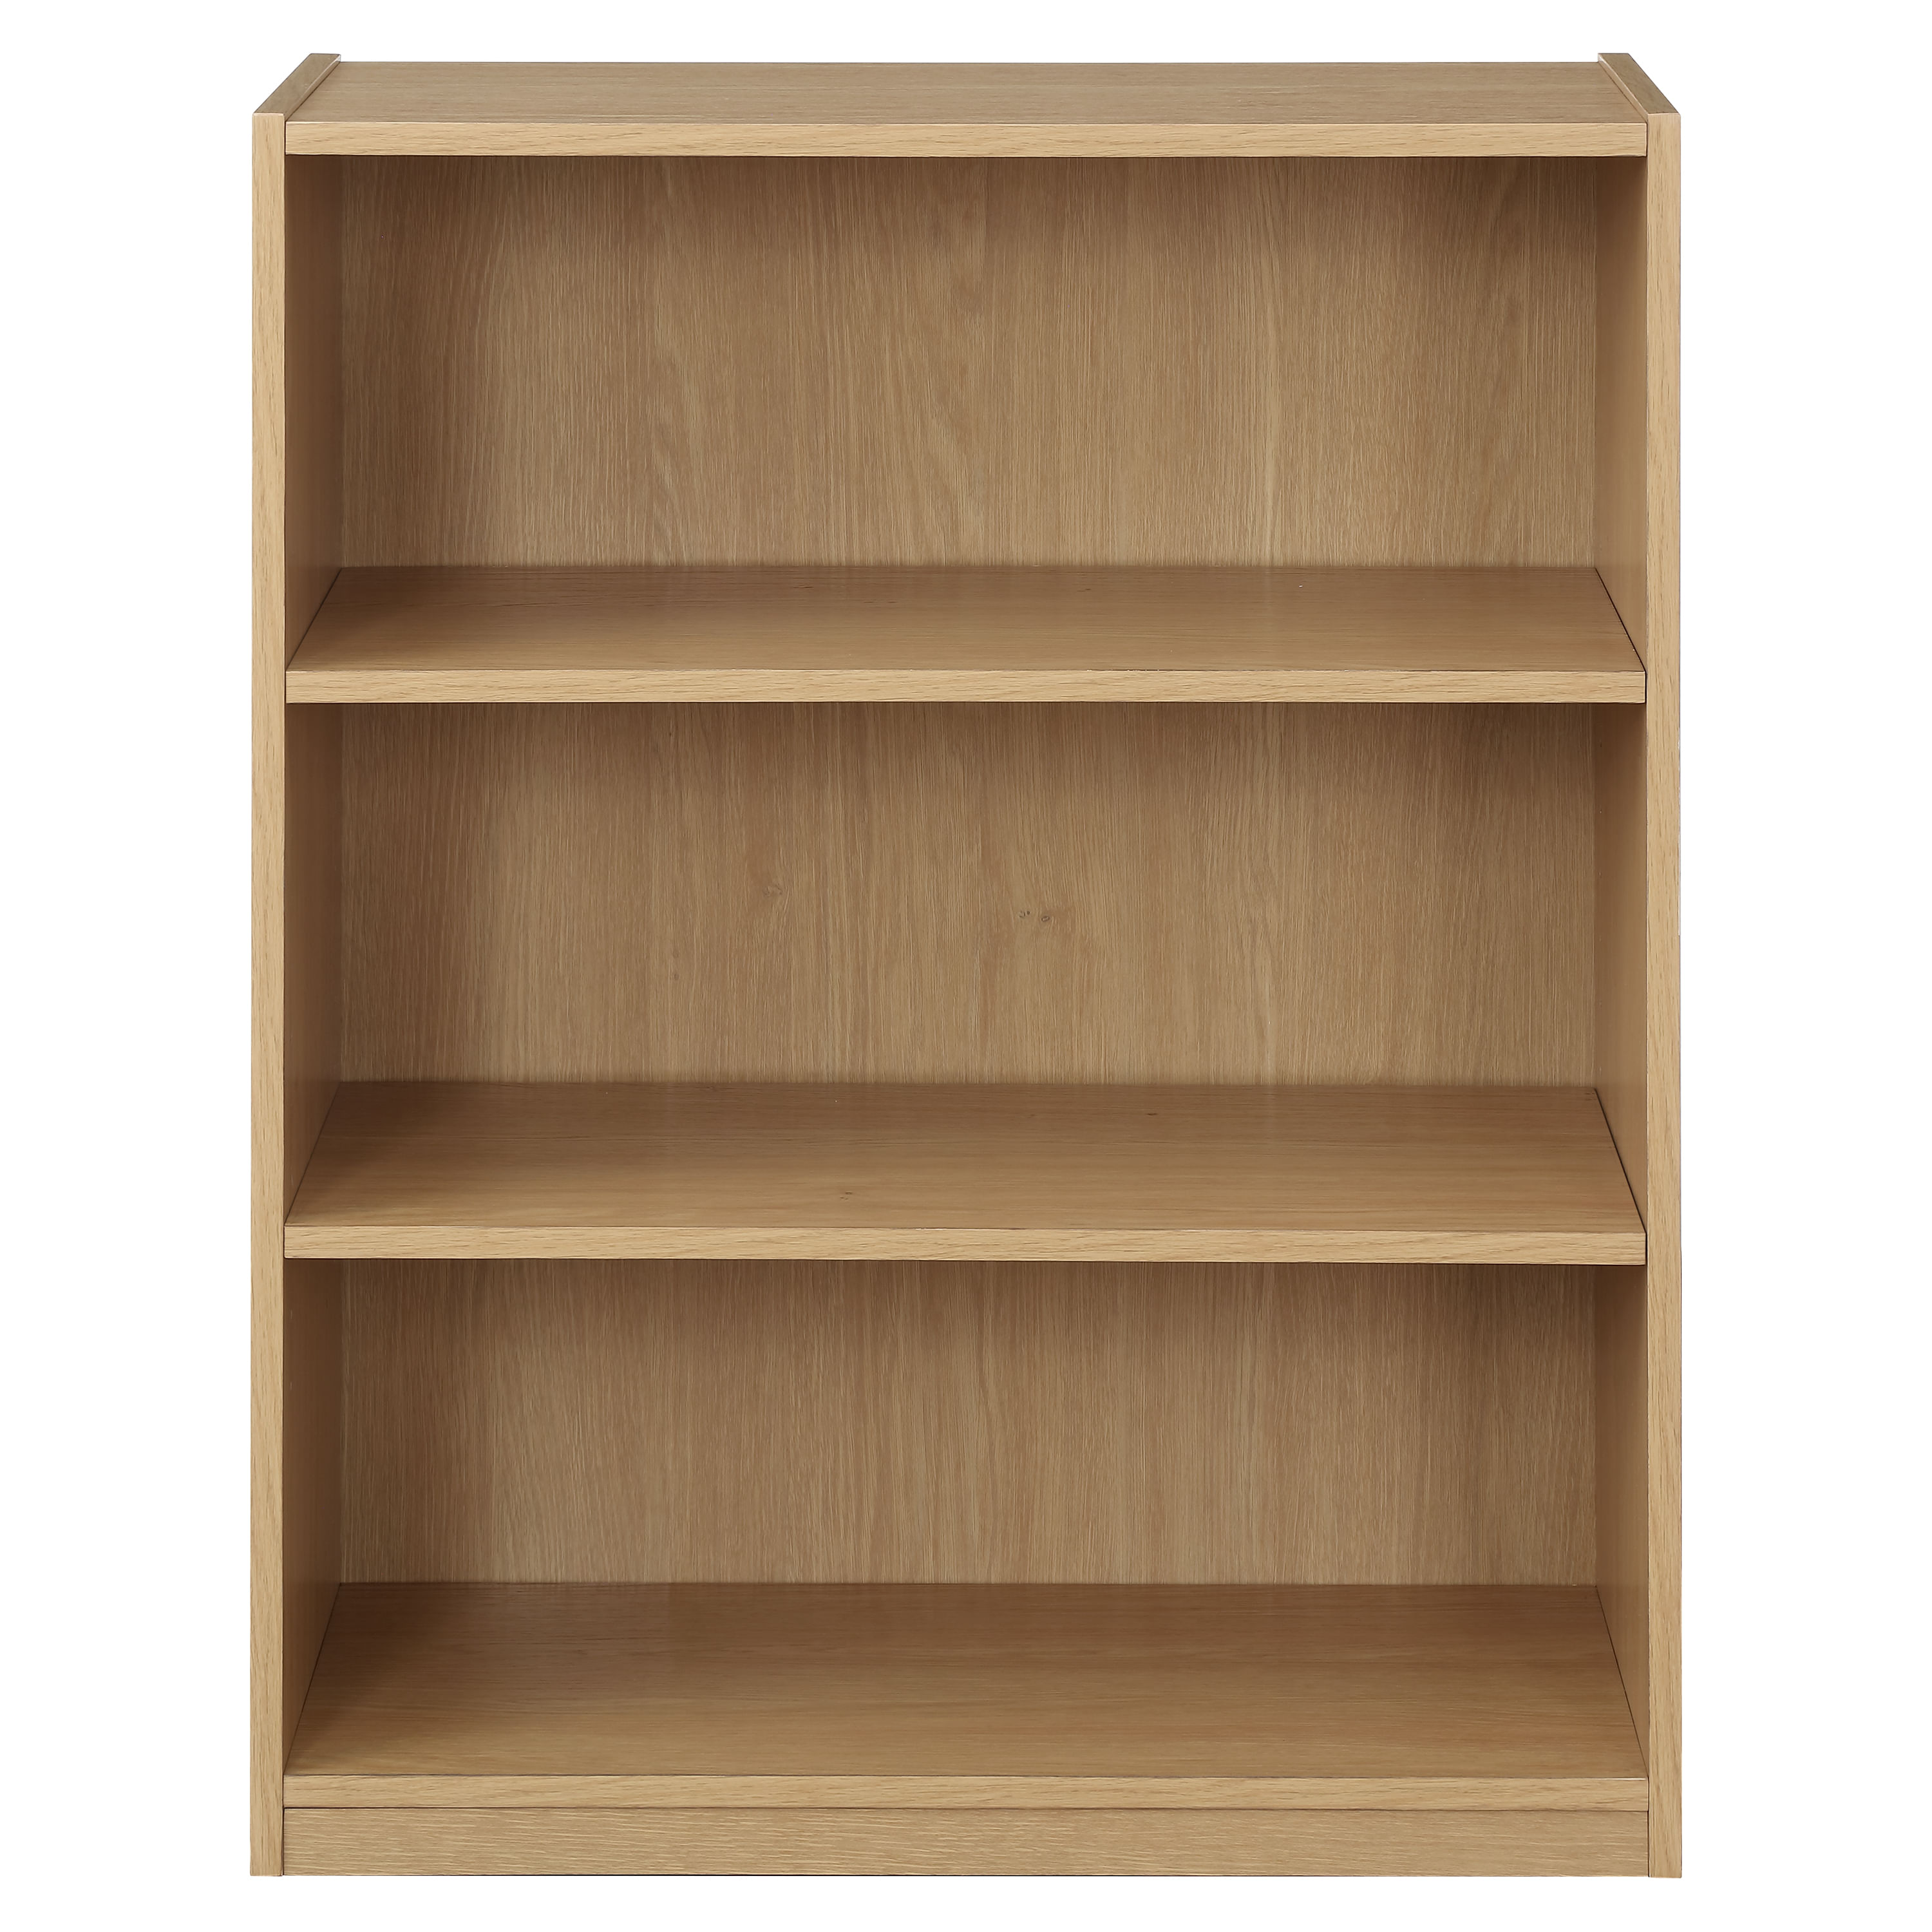  DOLUNTO Estante de almacenamiento Estantería de madera maciza  de roble blanco, estante de madera de almacenamiento gabinete de pared  (color : roble, tamaño: A3 47.2x11.0x16.3 in) : Todo lo demás